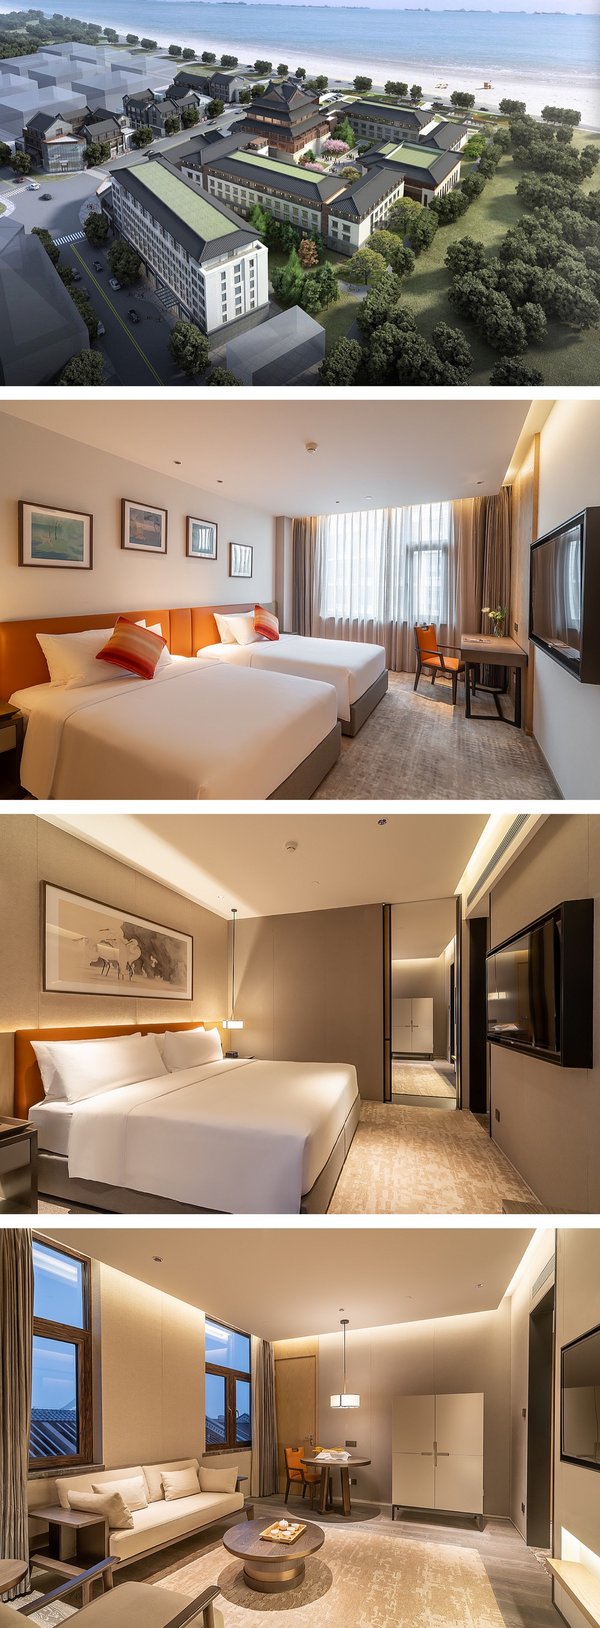 蓬莱宝龙艺悦酒店开业 宝龙酒店集团首次尝试双品牌运营模式